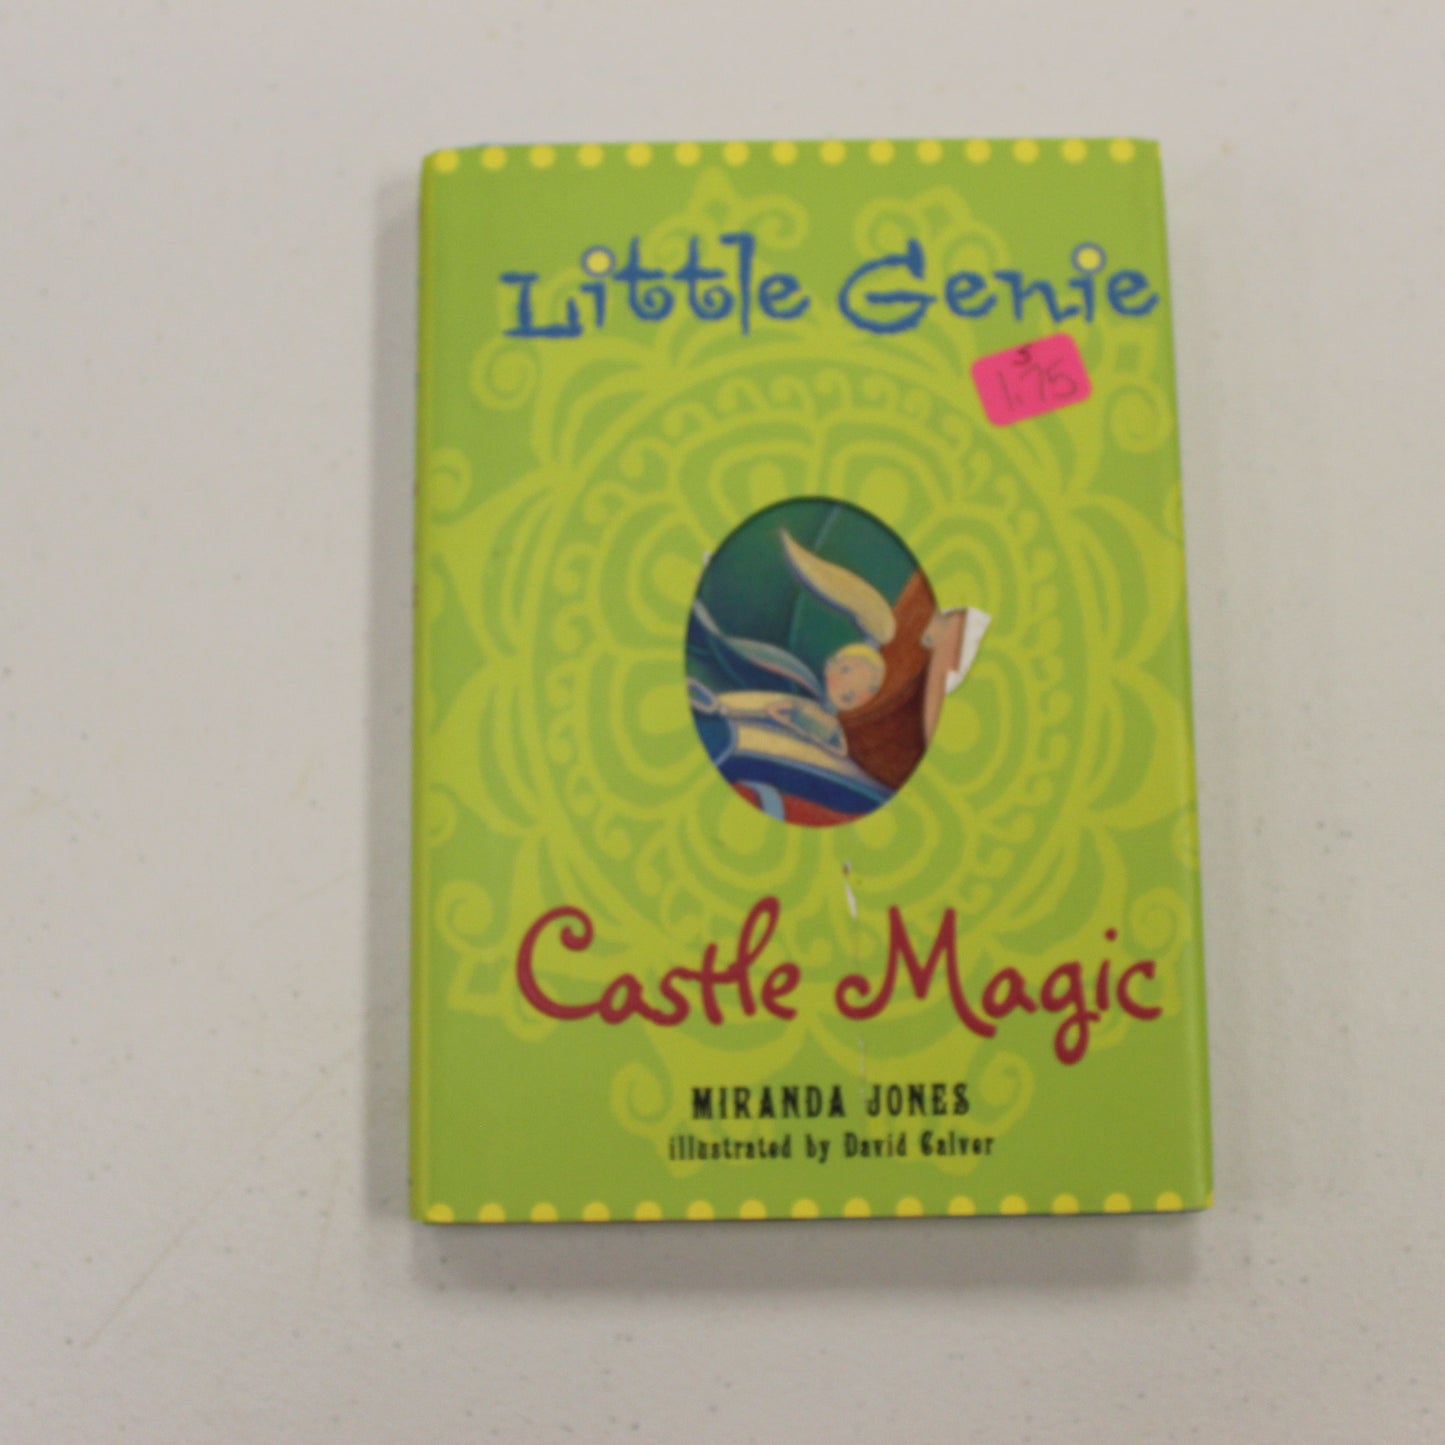 LITTLE GENIE CASTLE MAGIC